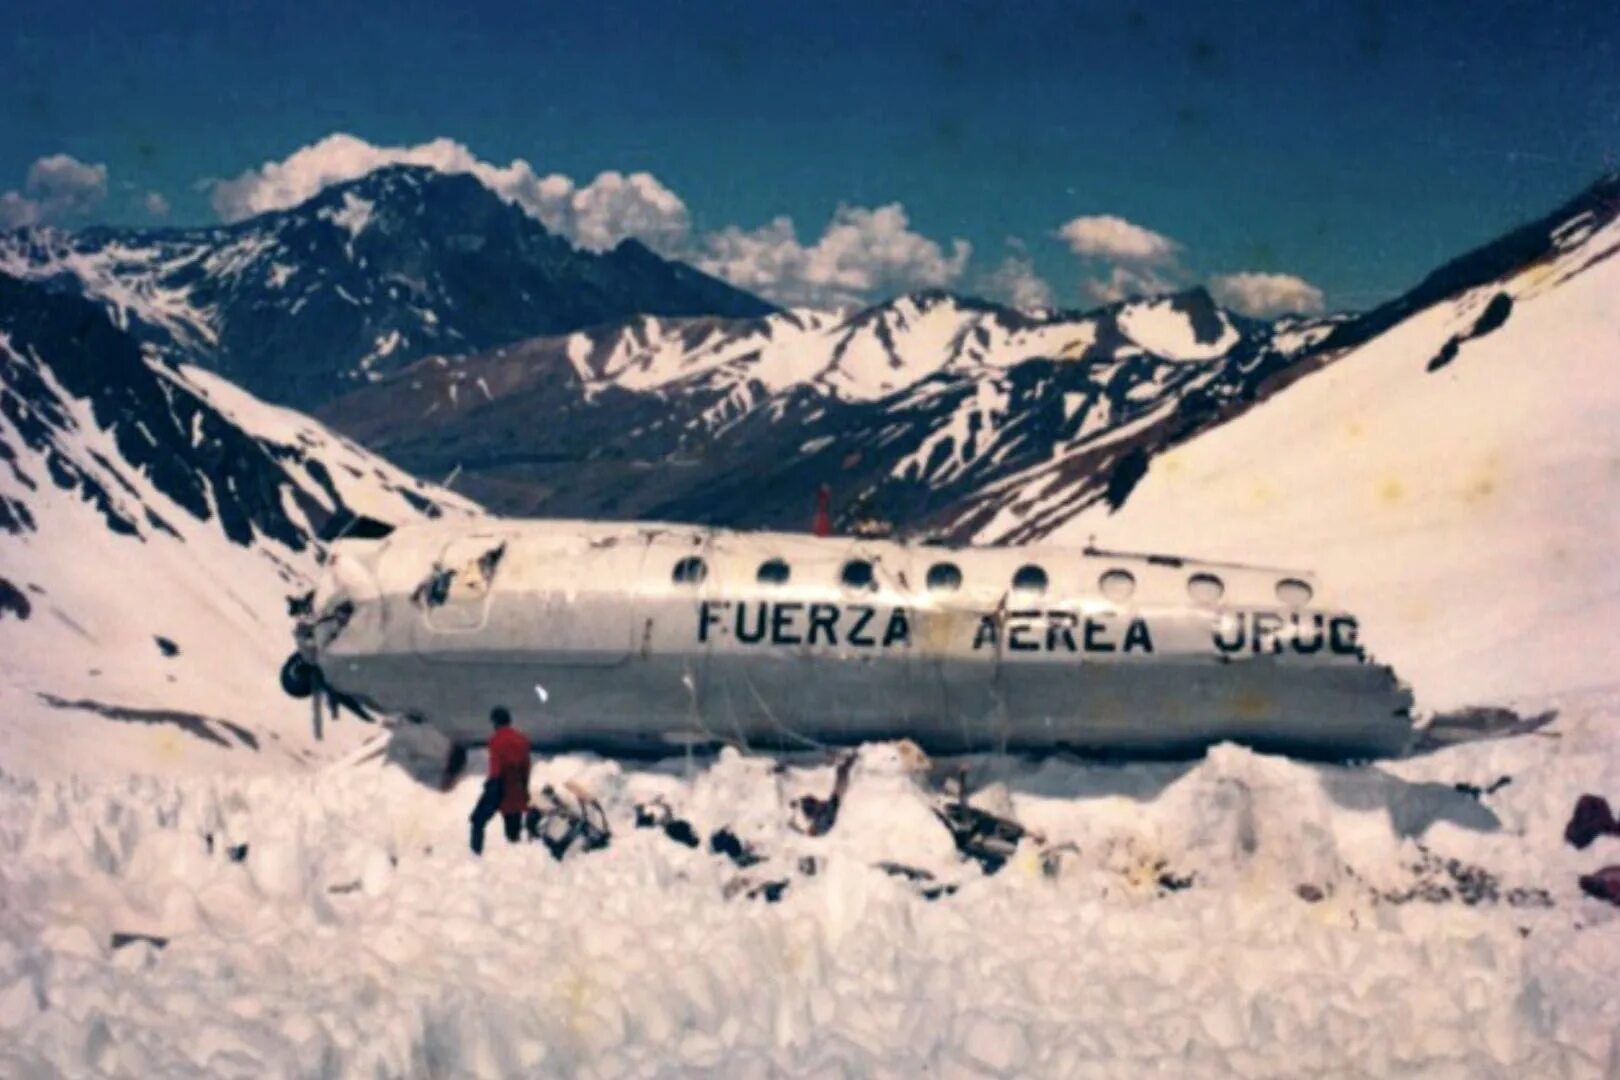 Самолет разбившийся в Андах в 1972. 571 Уругвайских ВВС В Андах.